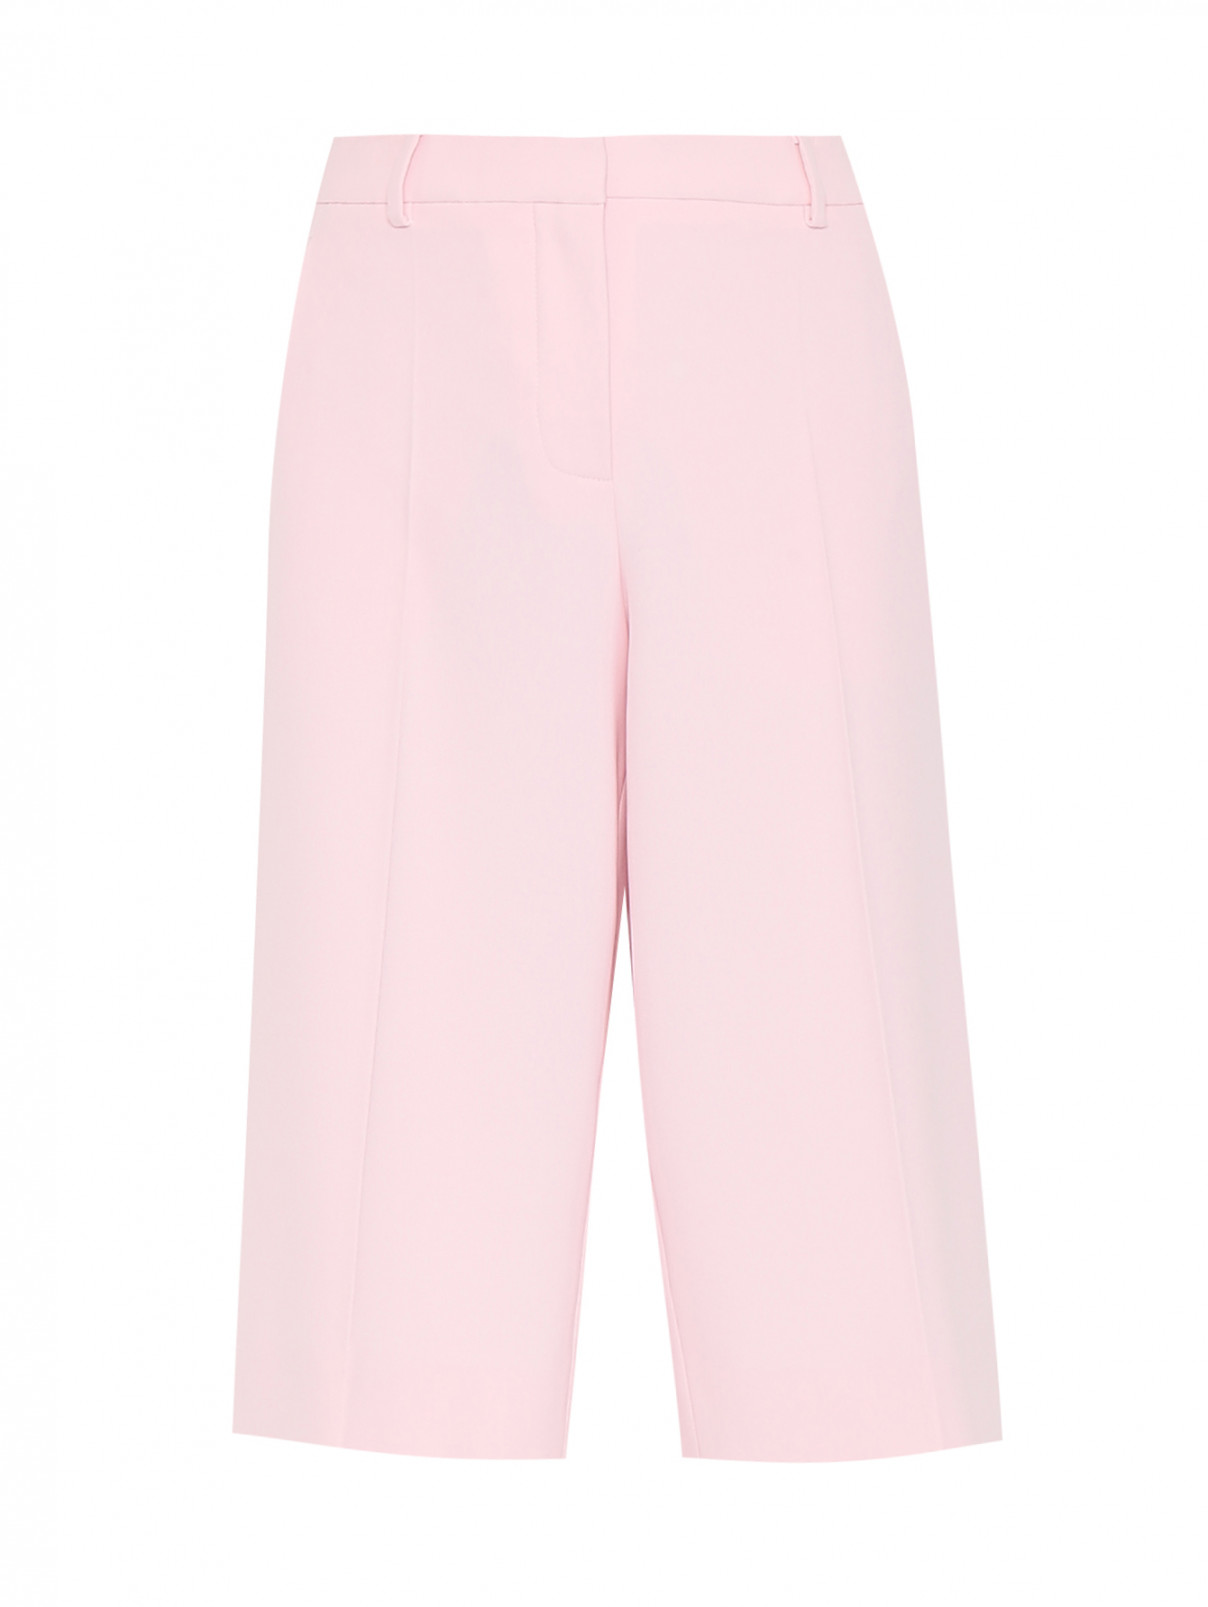 Бермуды однотонные с карманами Moschino Boutique  –  Общий вид  – Цвет:  Розовый